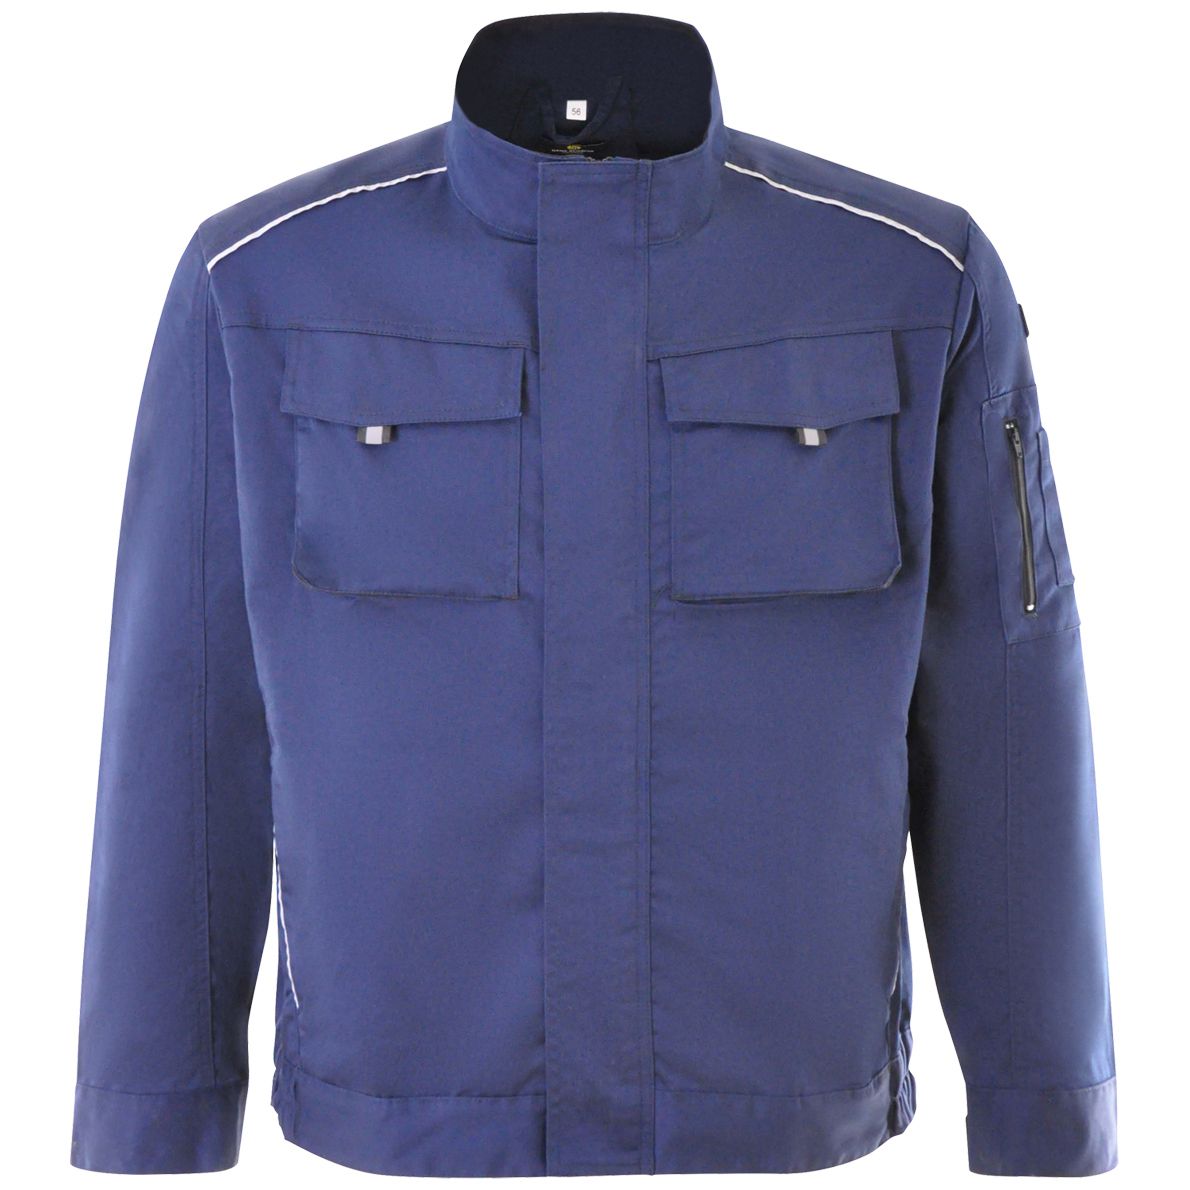 Hans Schäfer Work Jacket - with stretch insert & large pockets - Waistband jacket for work - Dark blue - 58